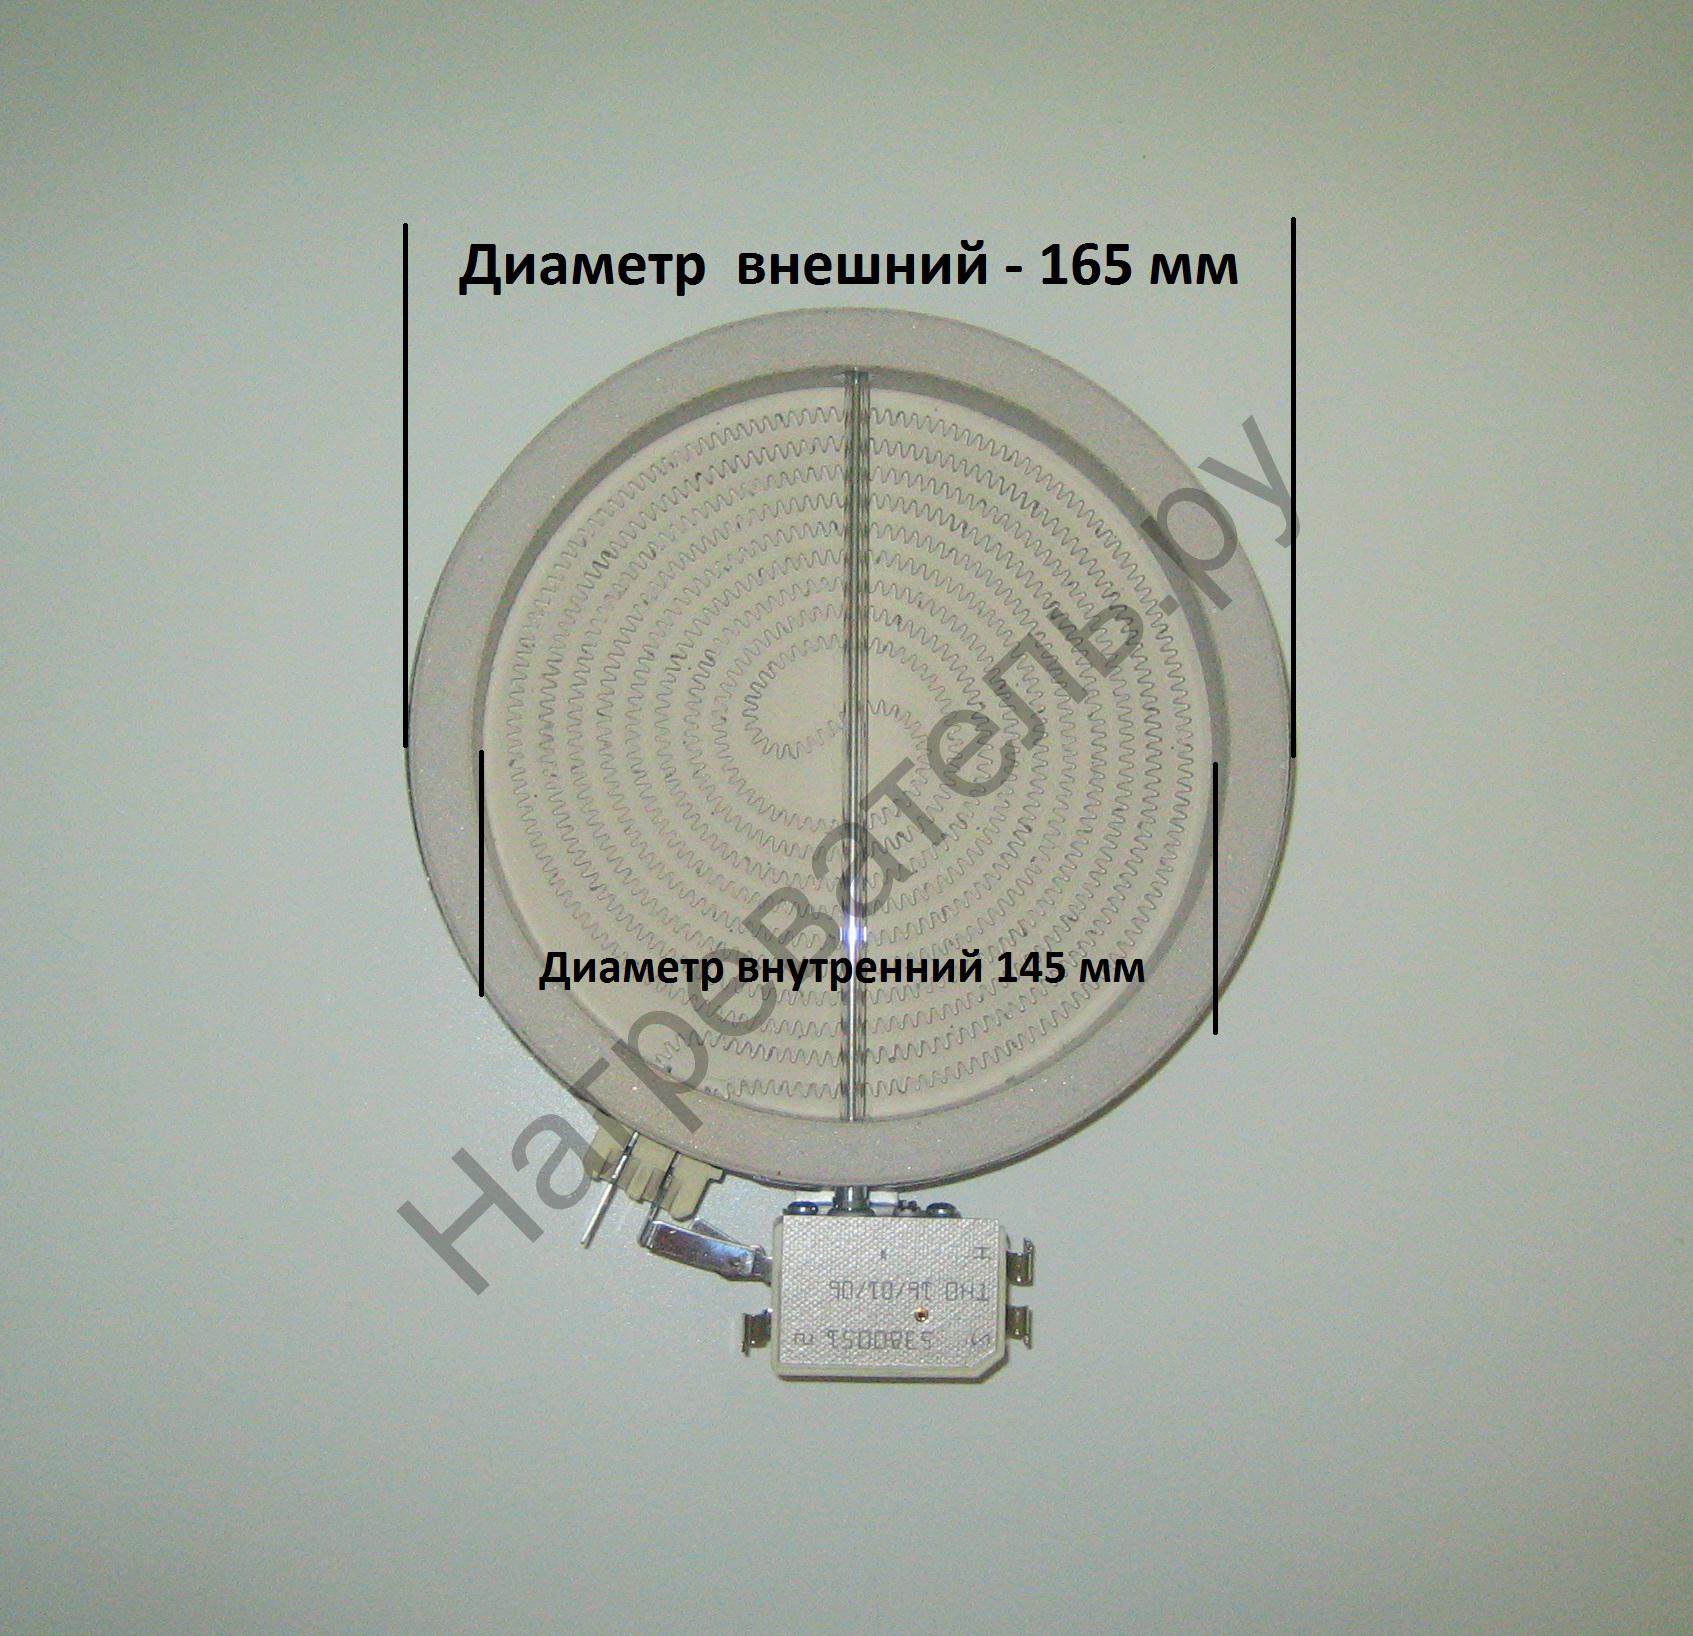 Конфорка стеклокерамическая  D165-145 мм  1,2kw 